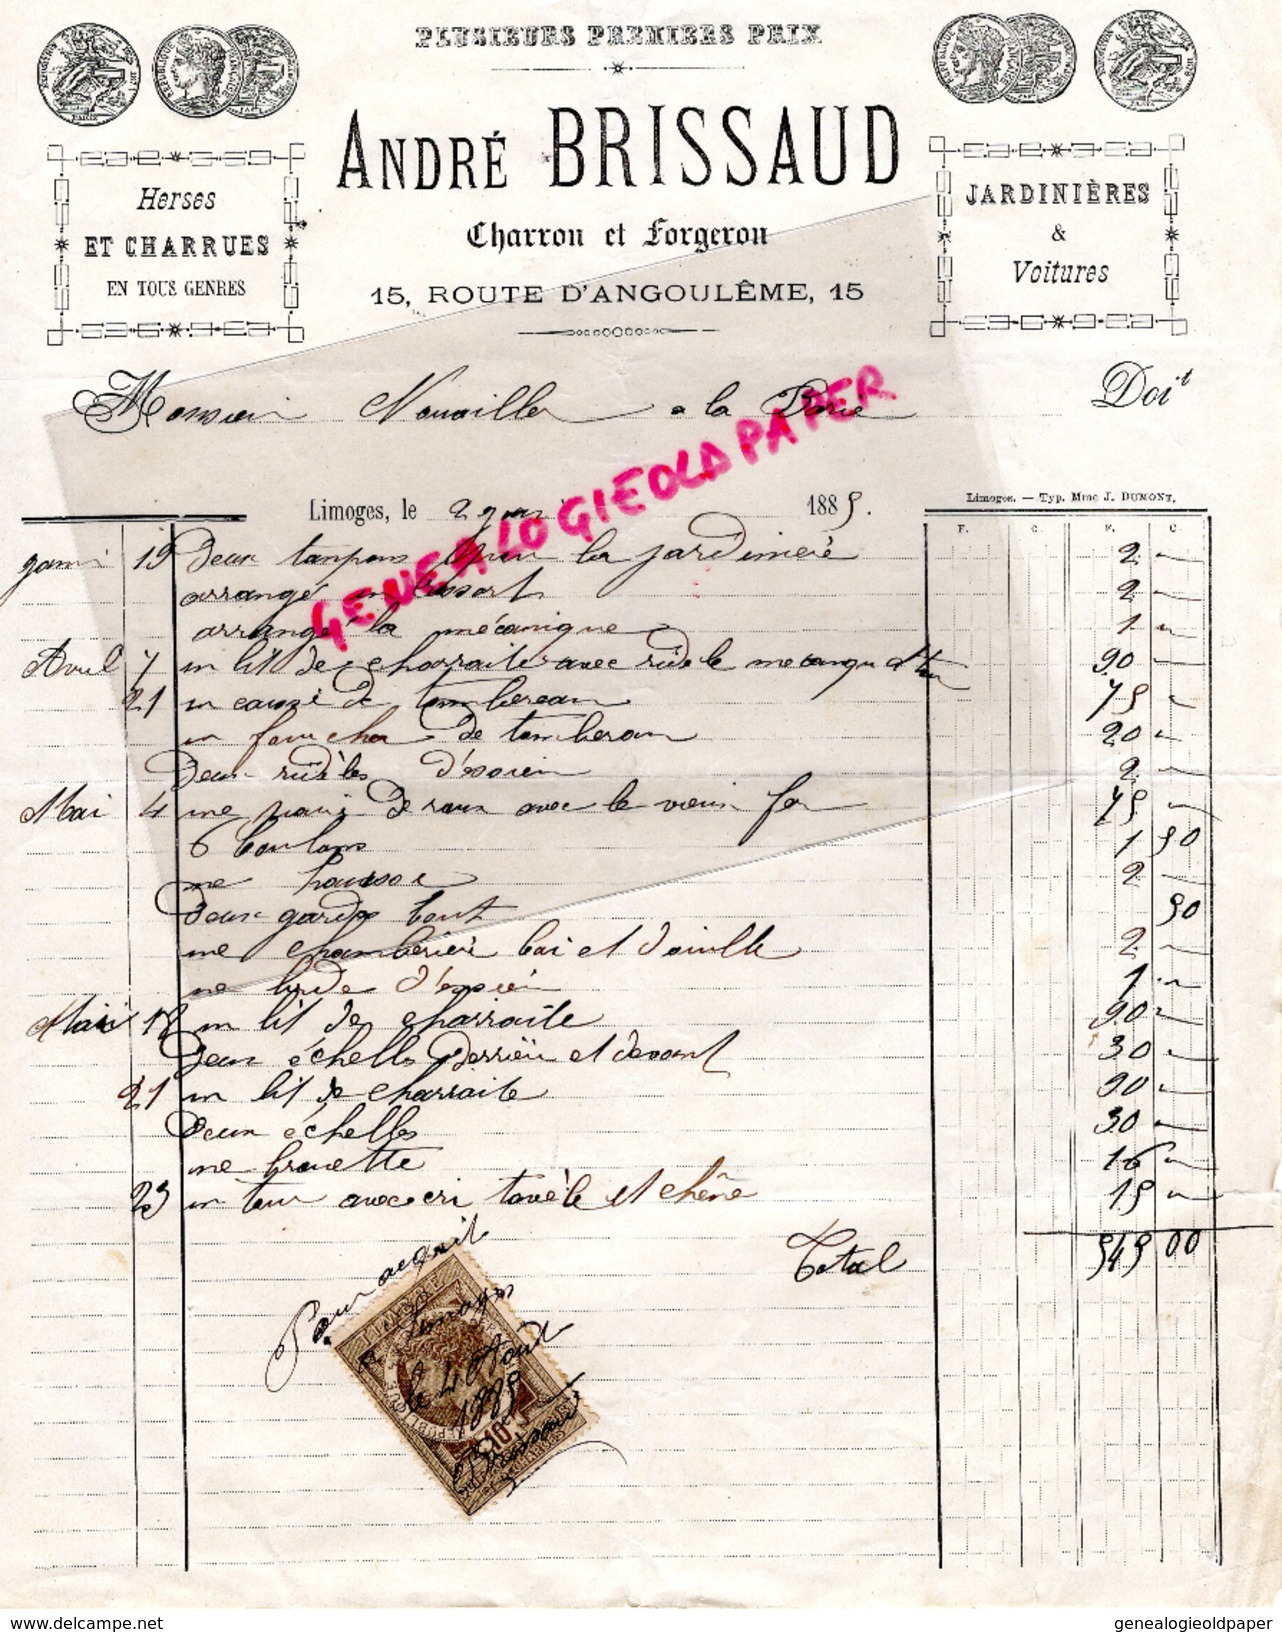 87 - LIMOGES - FACTURE ANDRE BRISSAUD -CHARRON ET FORGERON-15 ROUTE D' ANGOULEME- 1885 - 1800 – 1899